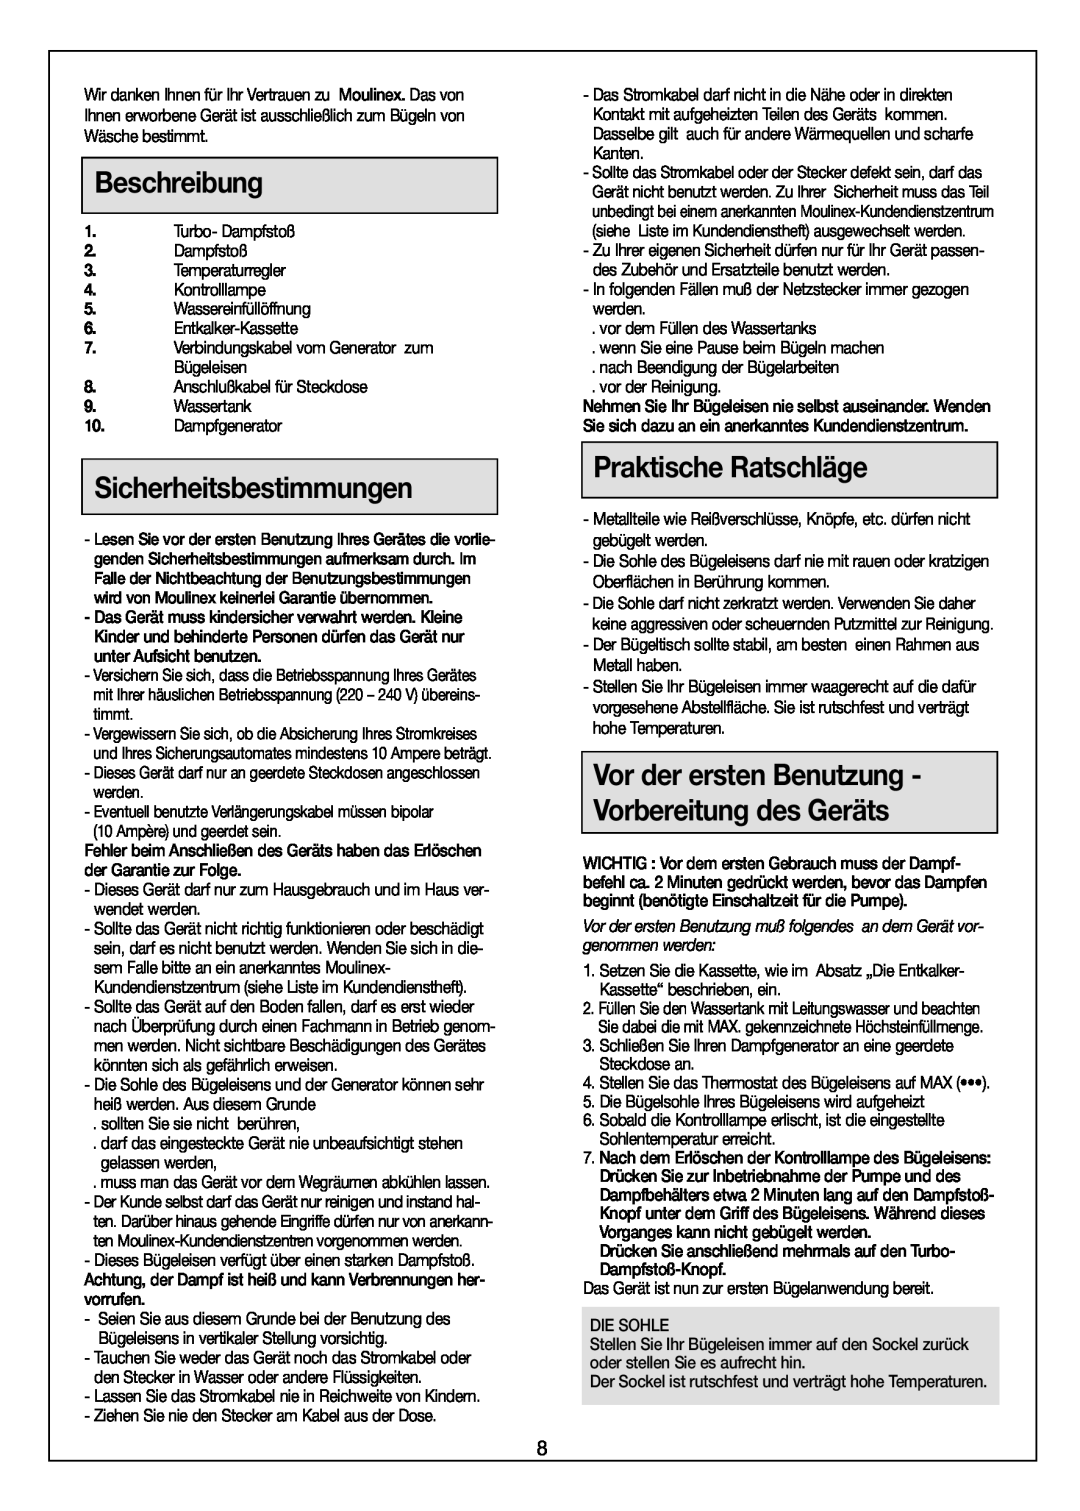 Moulinex Aquaplus IRON manual Beschreibung, Sicherheitsbestimmungen, Praktische Ratschläge 